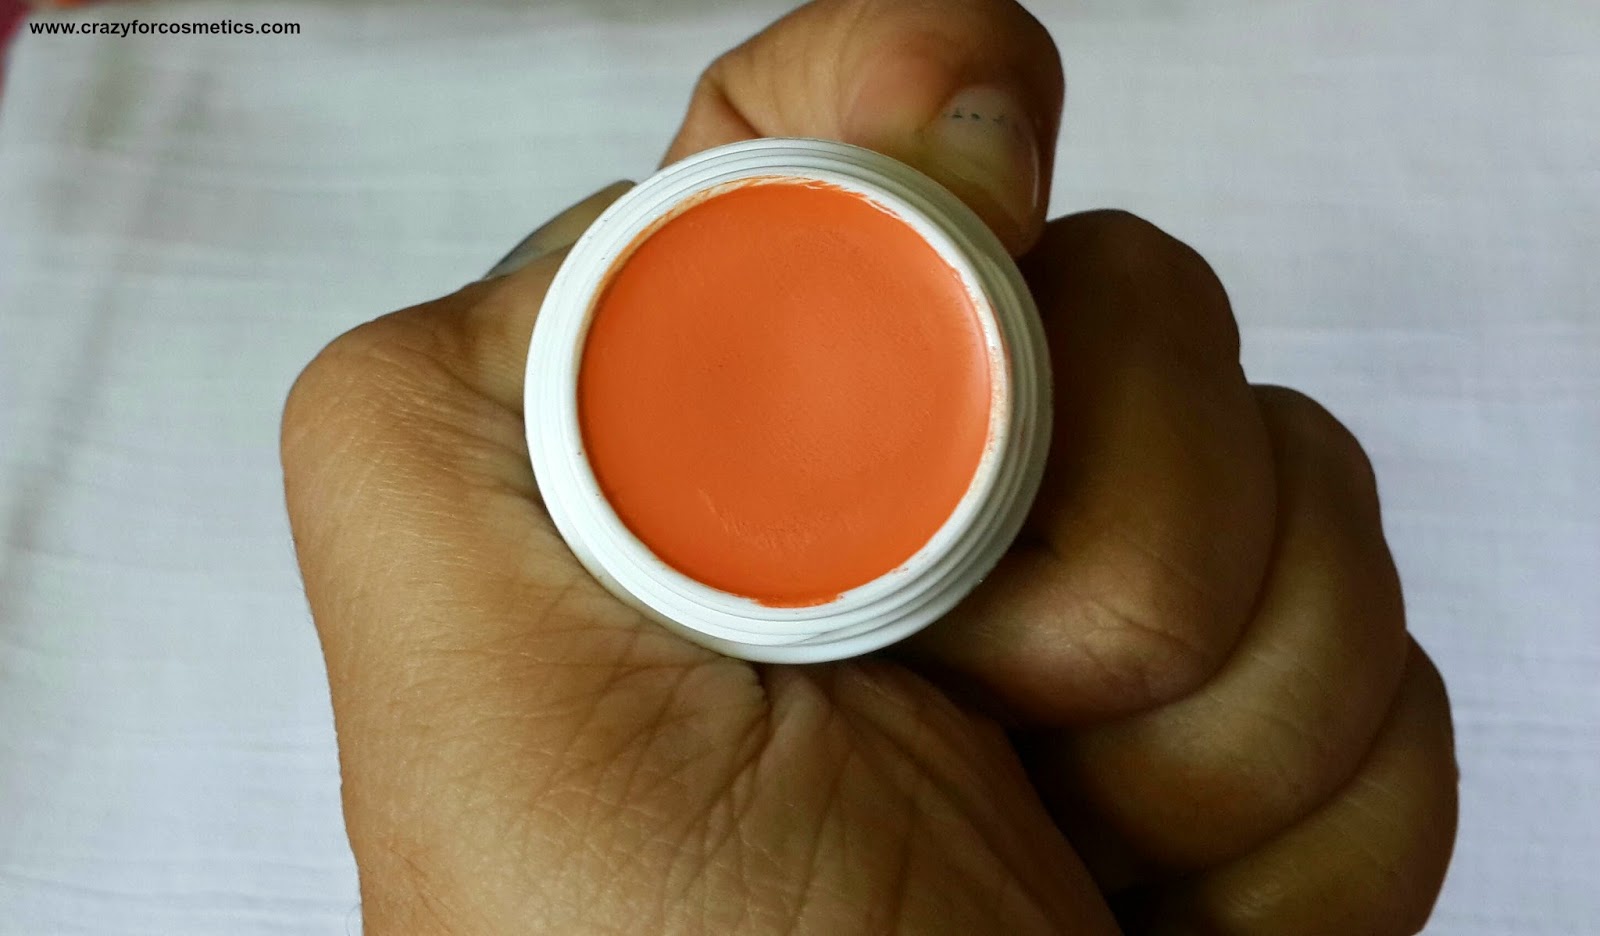 Kryolan's Orange Concealer Cream in D 30 Orange